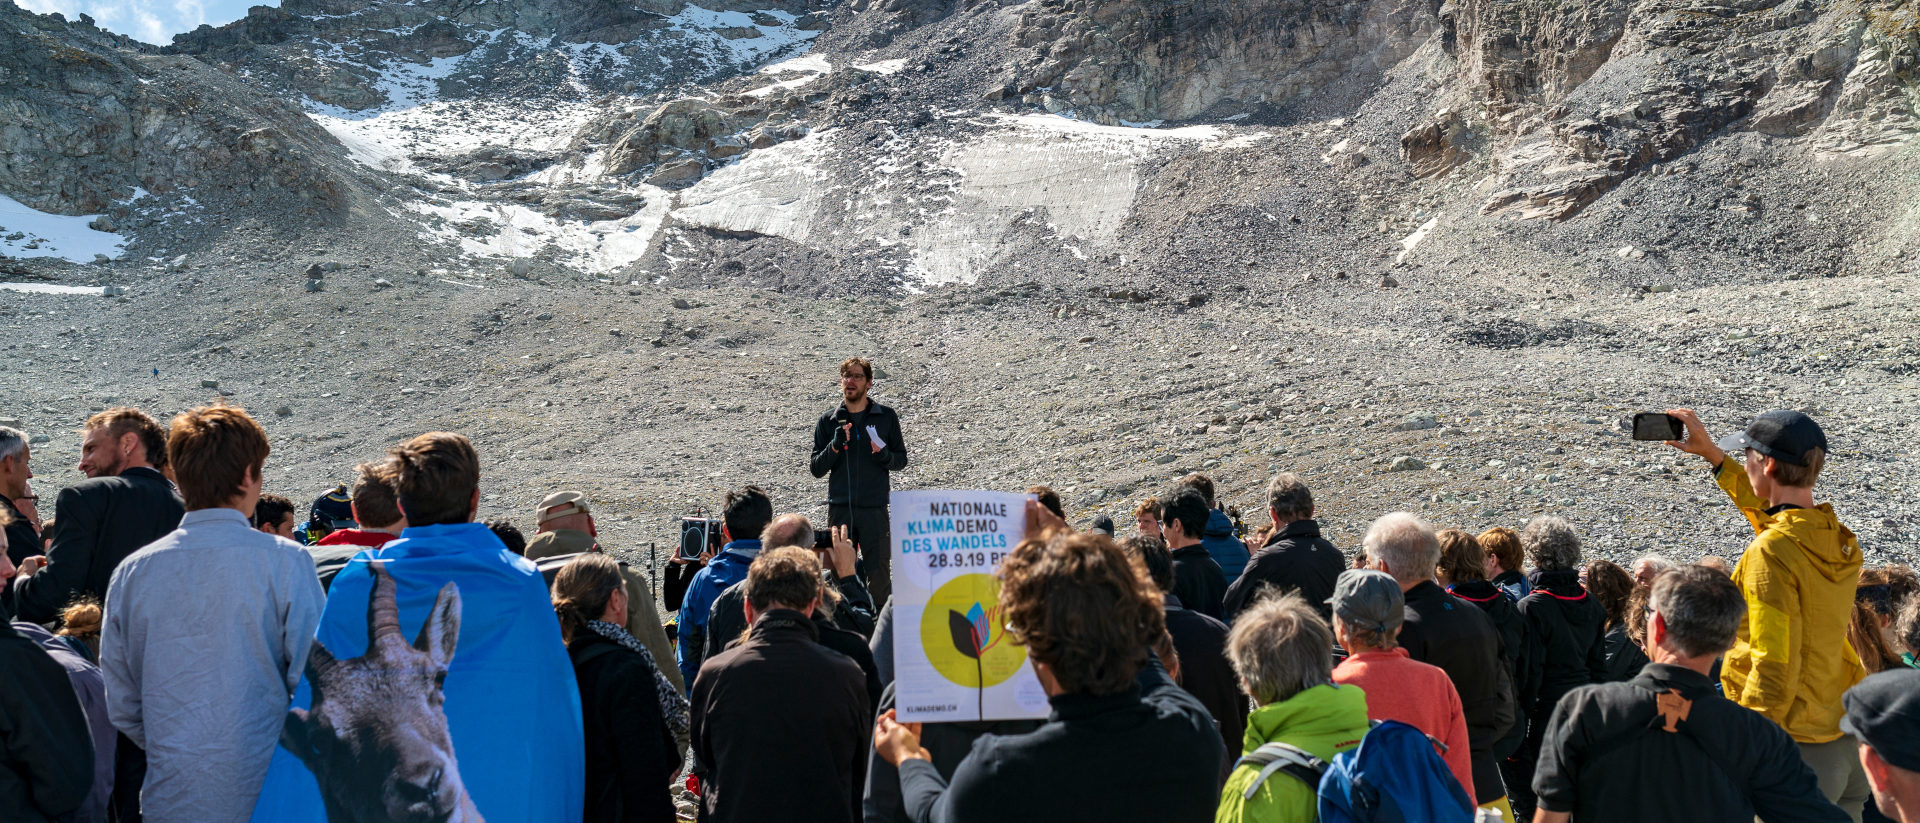 Eric Petrini untehalb der Reste des Pizol-Gletschers